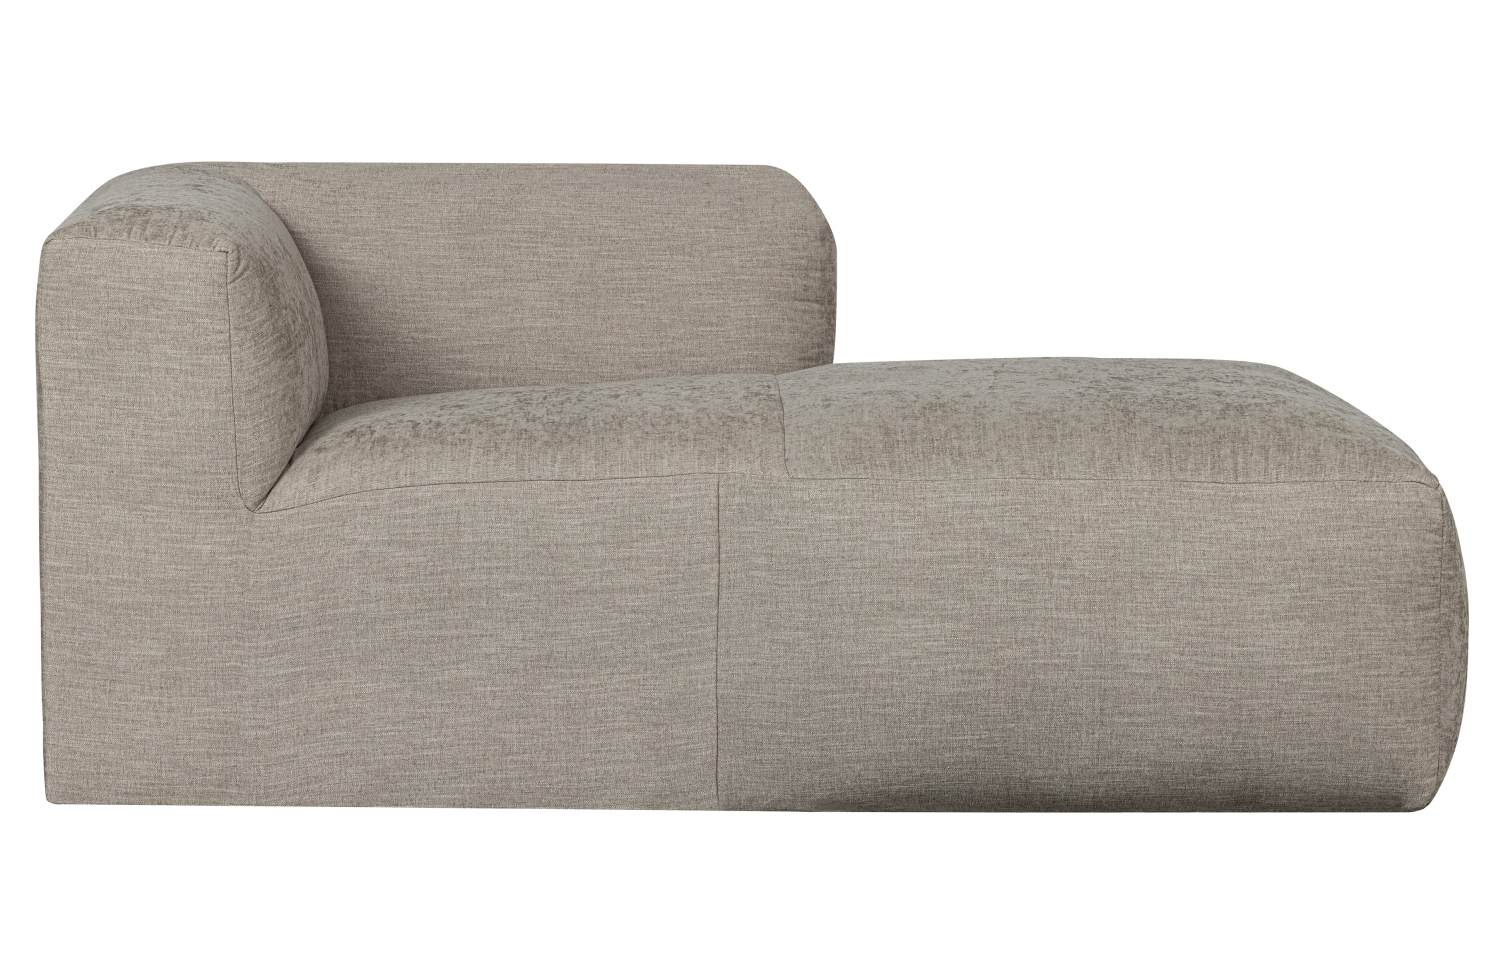 Das Modulsofa Yent als Chaise-Longue überzeugt mit seinem modernen Design. Gefertigt wurde es aus Webstoff, welcher einen hellgrauen Farbton besitzt. Das Sofa ist in der Ausführung Links. Die Sitzhöhe des Sofas beträgt 47 cm.